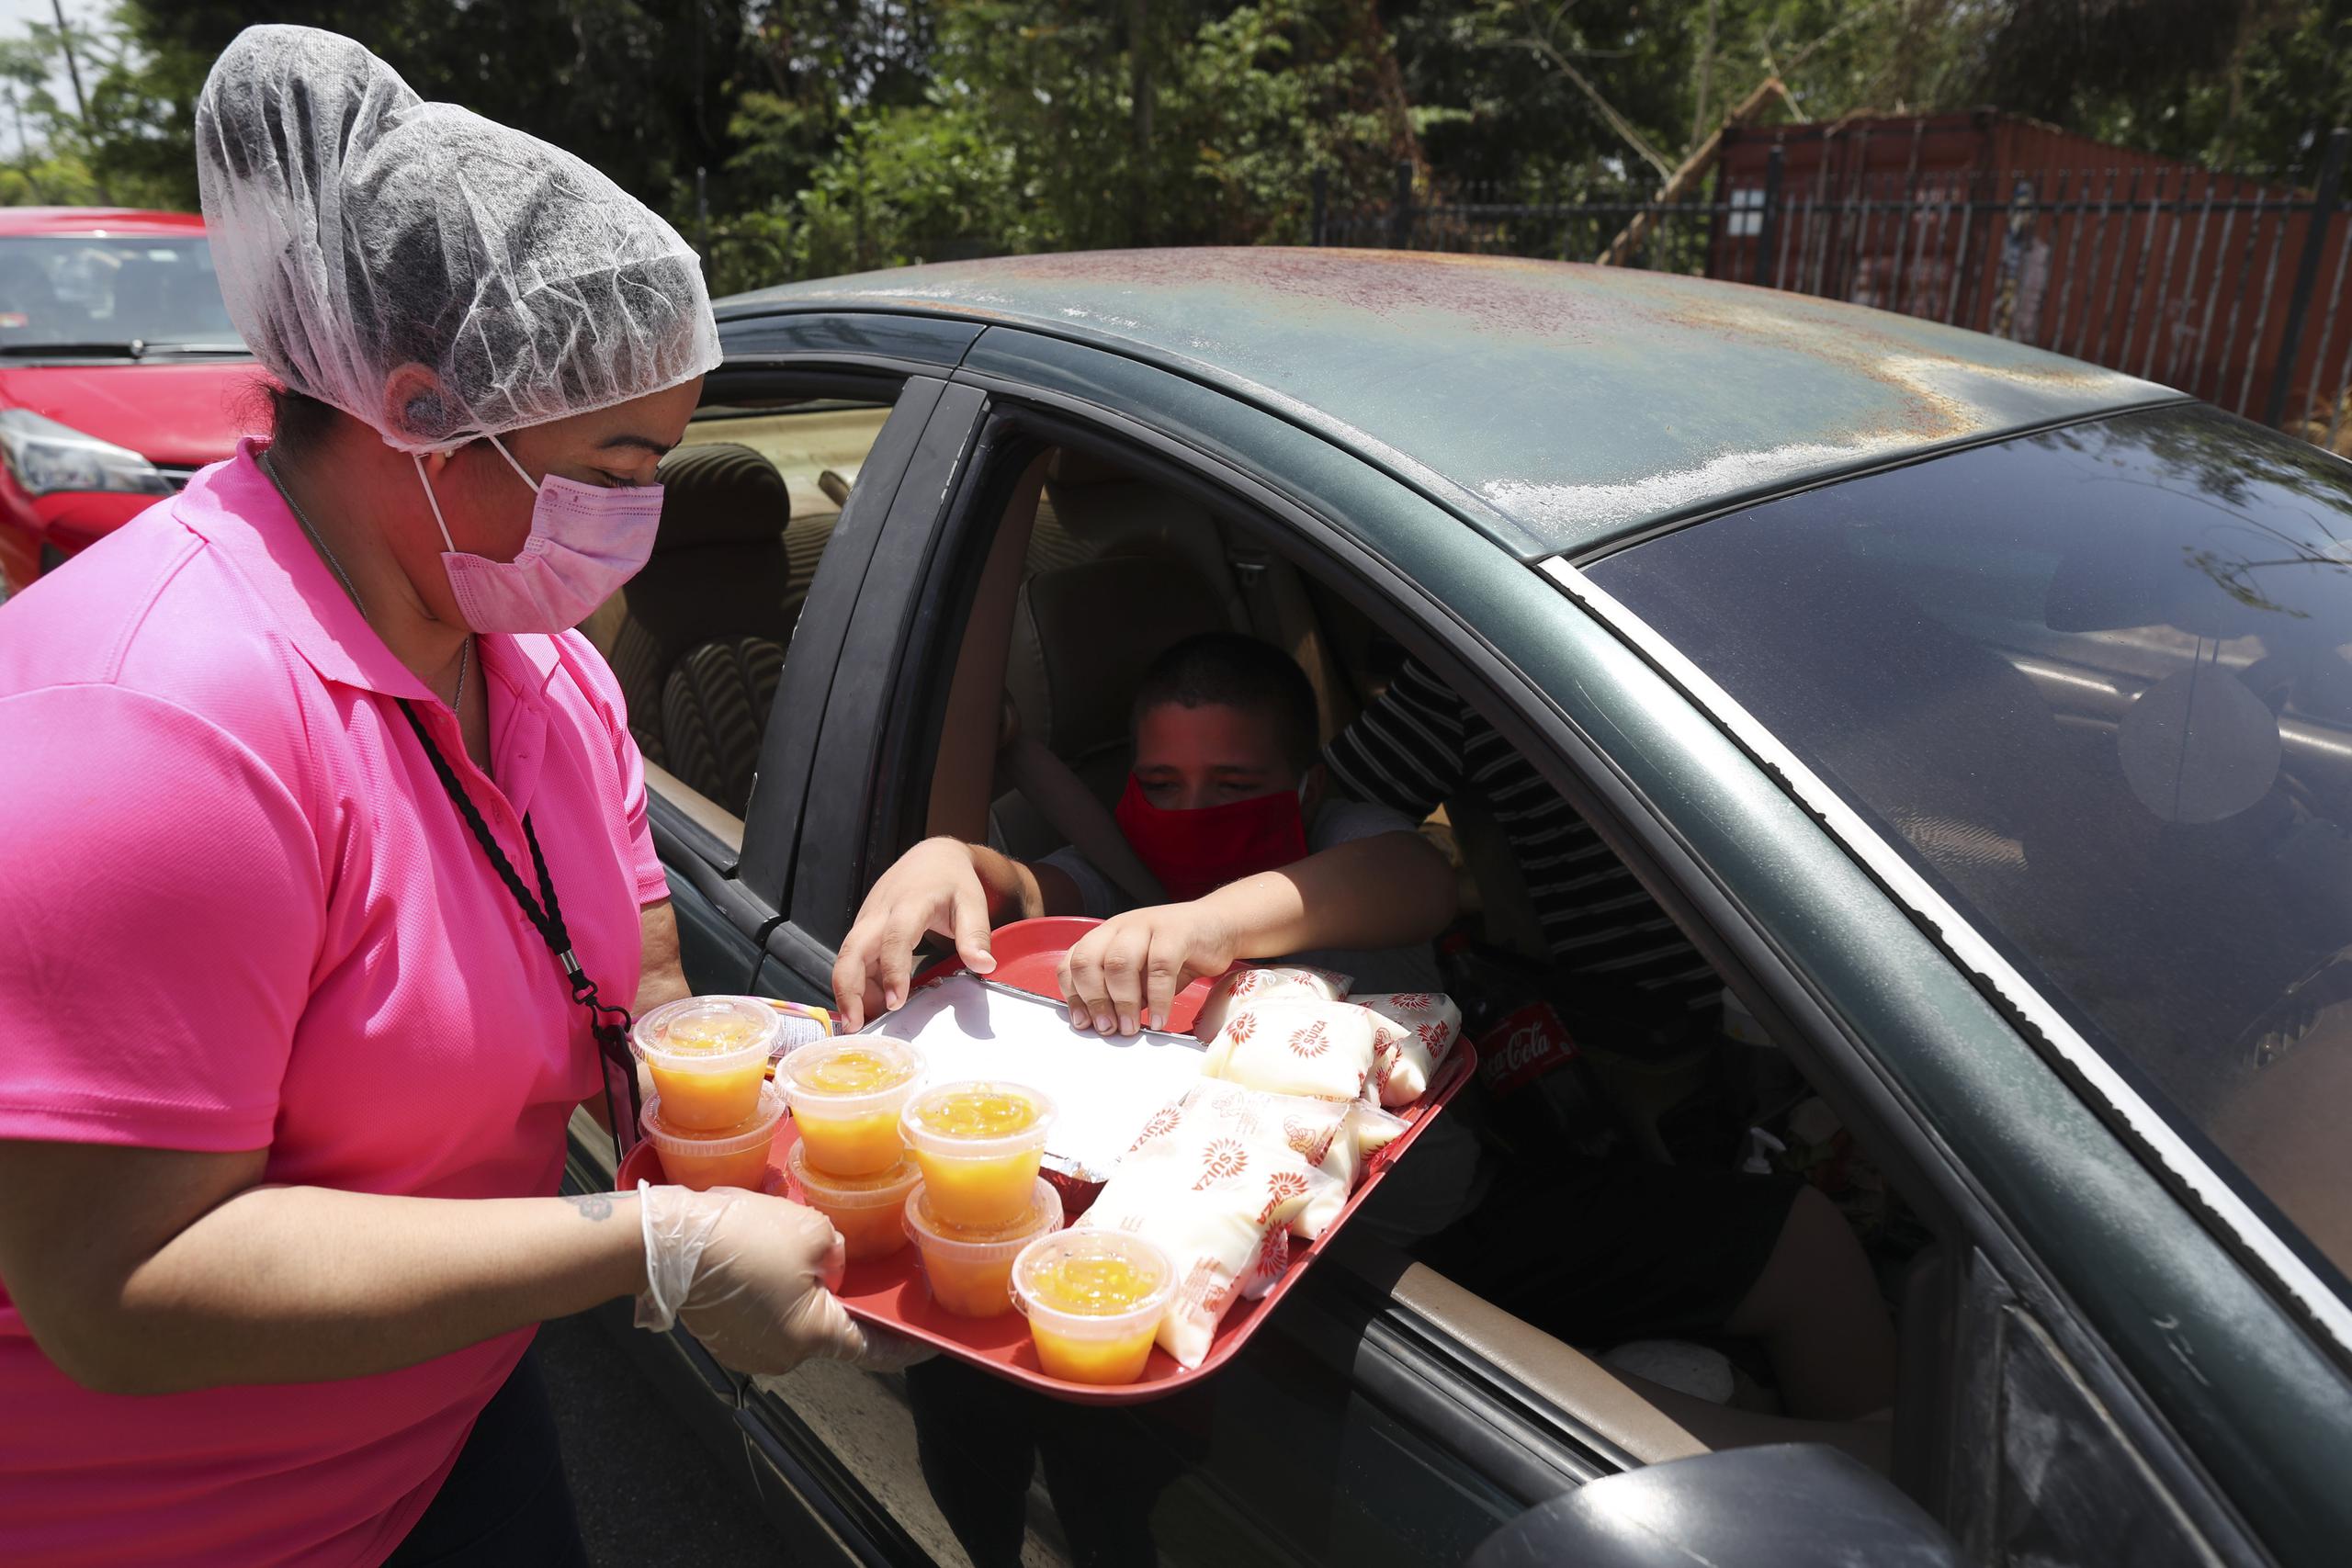 El municipio de Guaynabo reparte los alimentos preparados por los comedores escolares via servicarro. (Archivo)